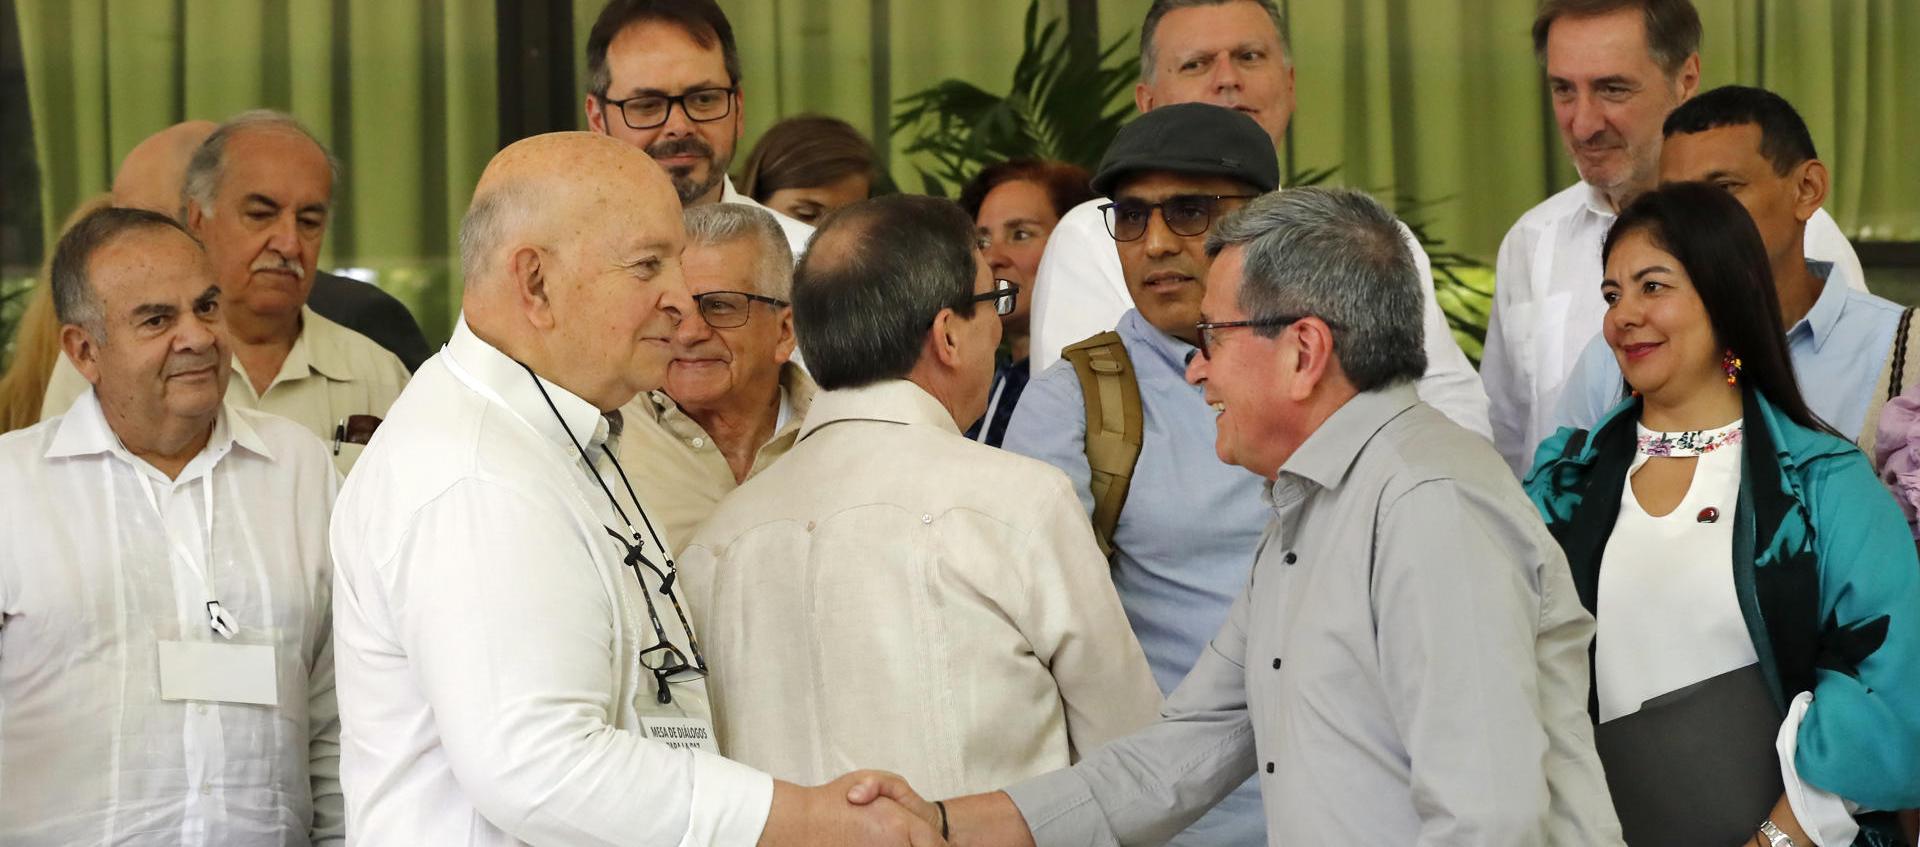 Otty Patiño, delegado del Gobierno de Colombia, y el negociador jefe del ELN, Israel Ramírez, alias 'Pablo Beltrán', se saludan en el inicio del tercer ciclo de los diálogos de paz.